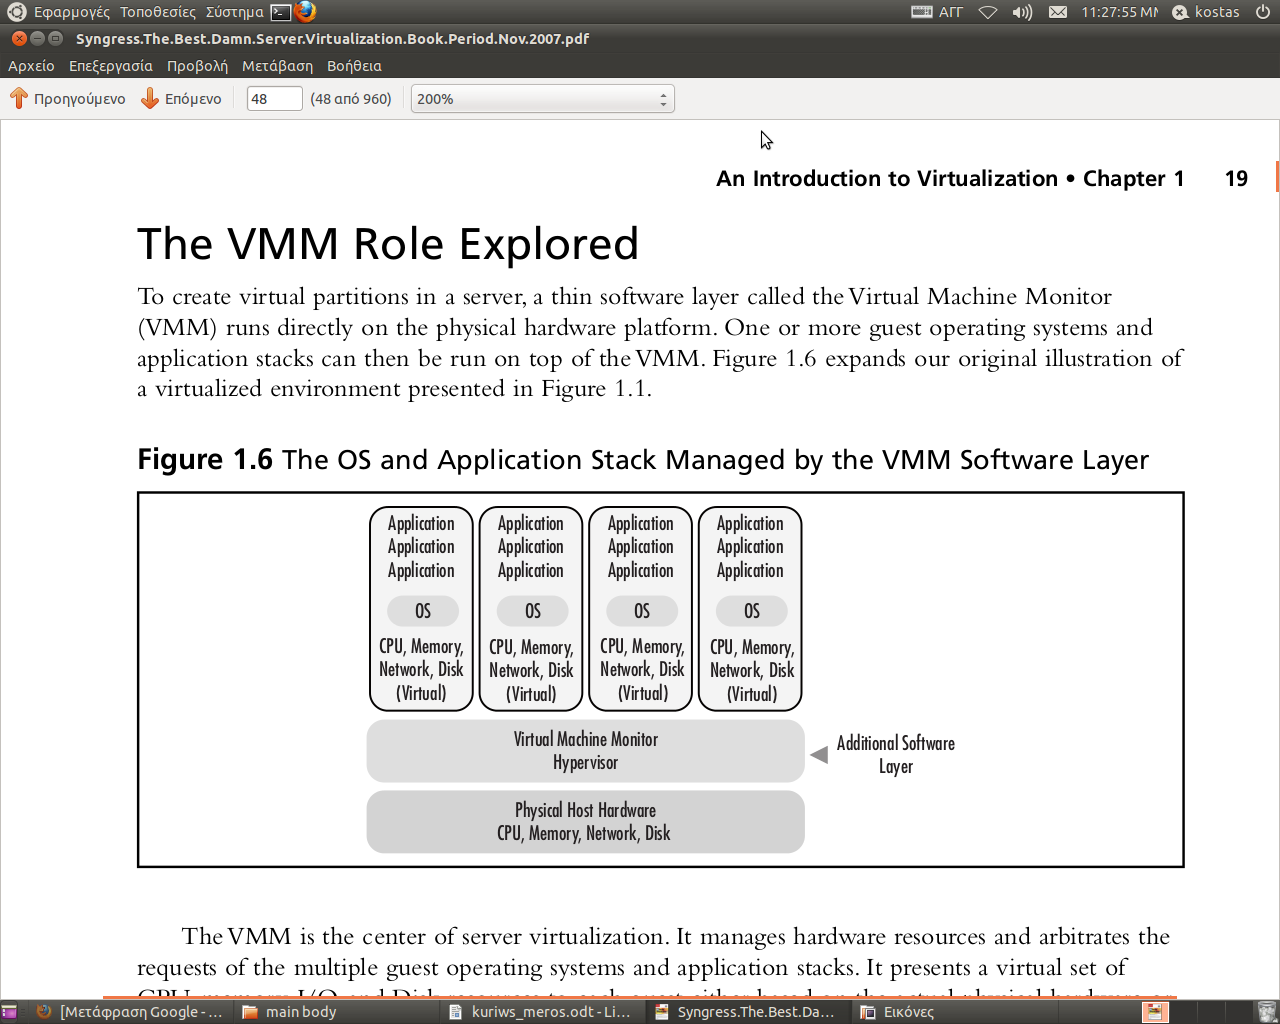 Εικόνα 3: Θέση του Hypervisor/Virtual Machine Monitor Ο VMM είναι το κέντρο της τεχνολογίας του Virtualization των Διαχειρίζεται τους πόρους του hardware και εποπτεύει τα αιτήματα πολλαπλών